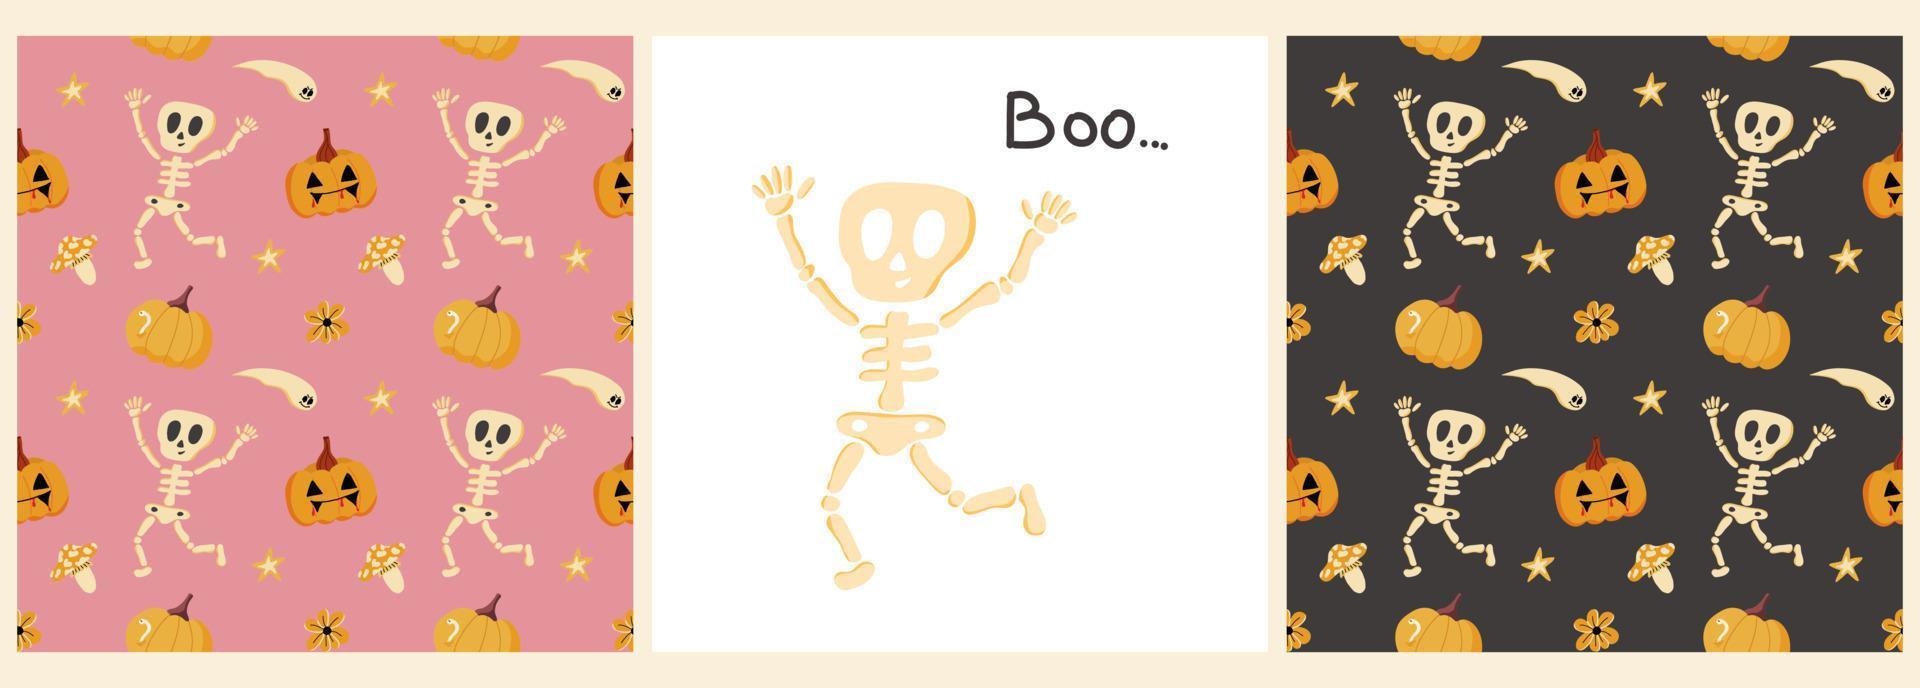 vektor uppsättning mönster och affischer med ett roligt skelett, pumpor, inskriptionen boo... på en färgad bakgrund. illustration för halloween, t-shirts, presentförpackning, vykort, helgdagar